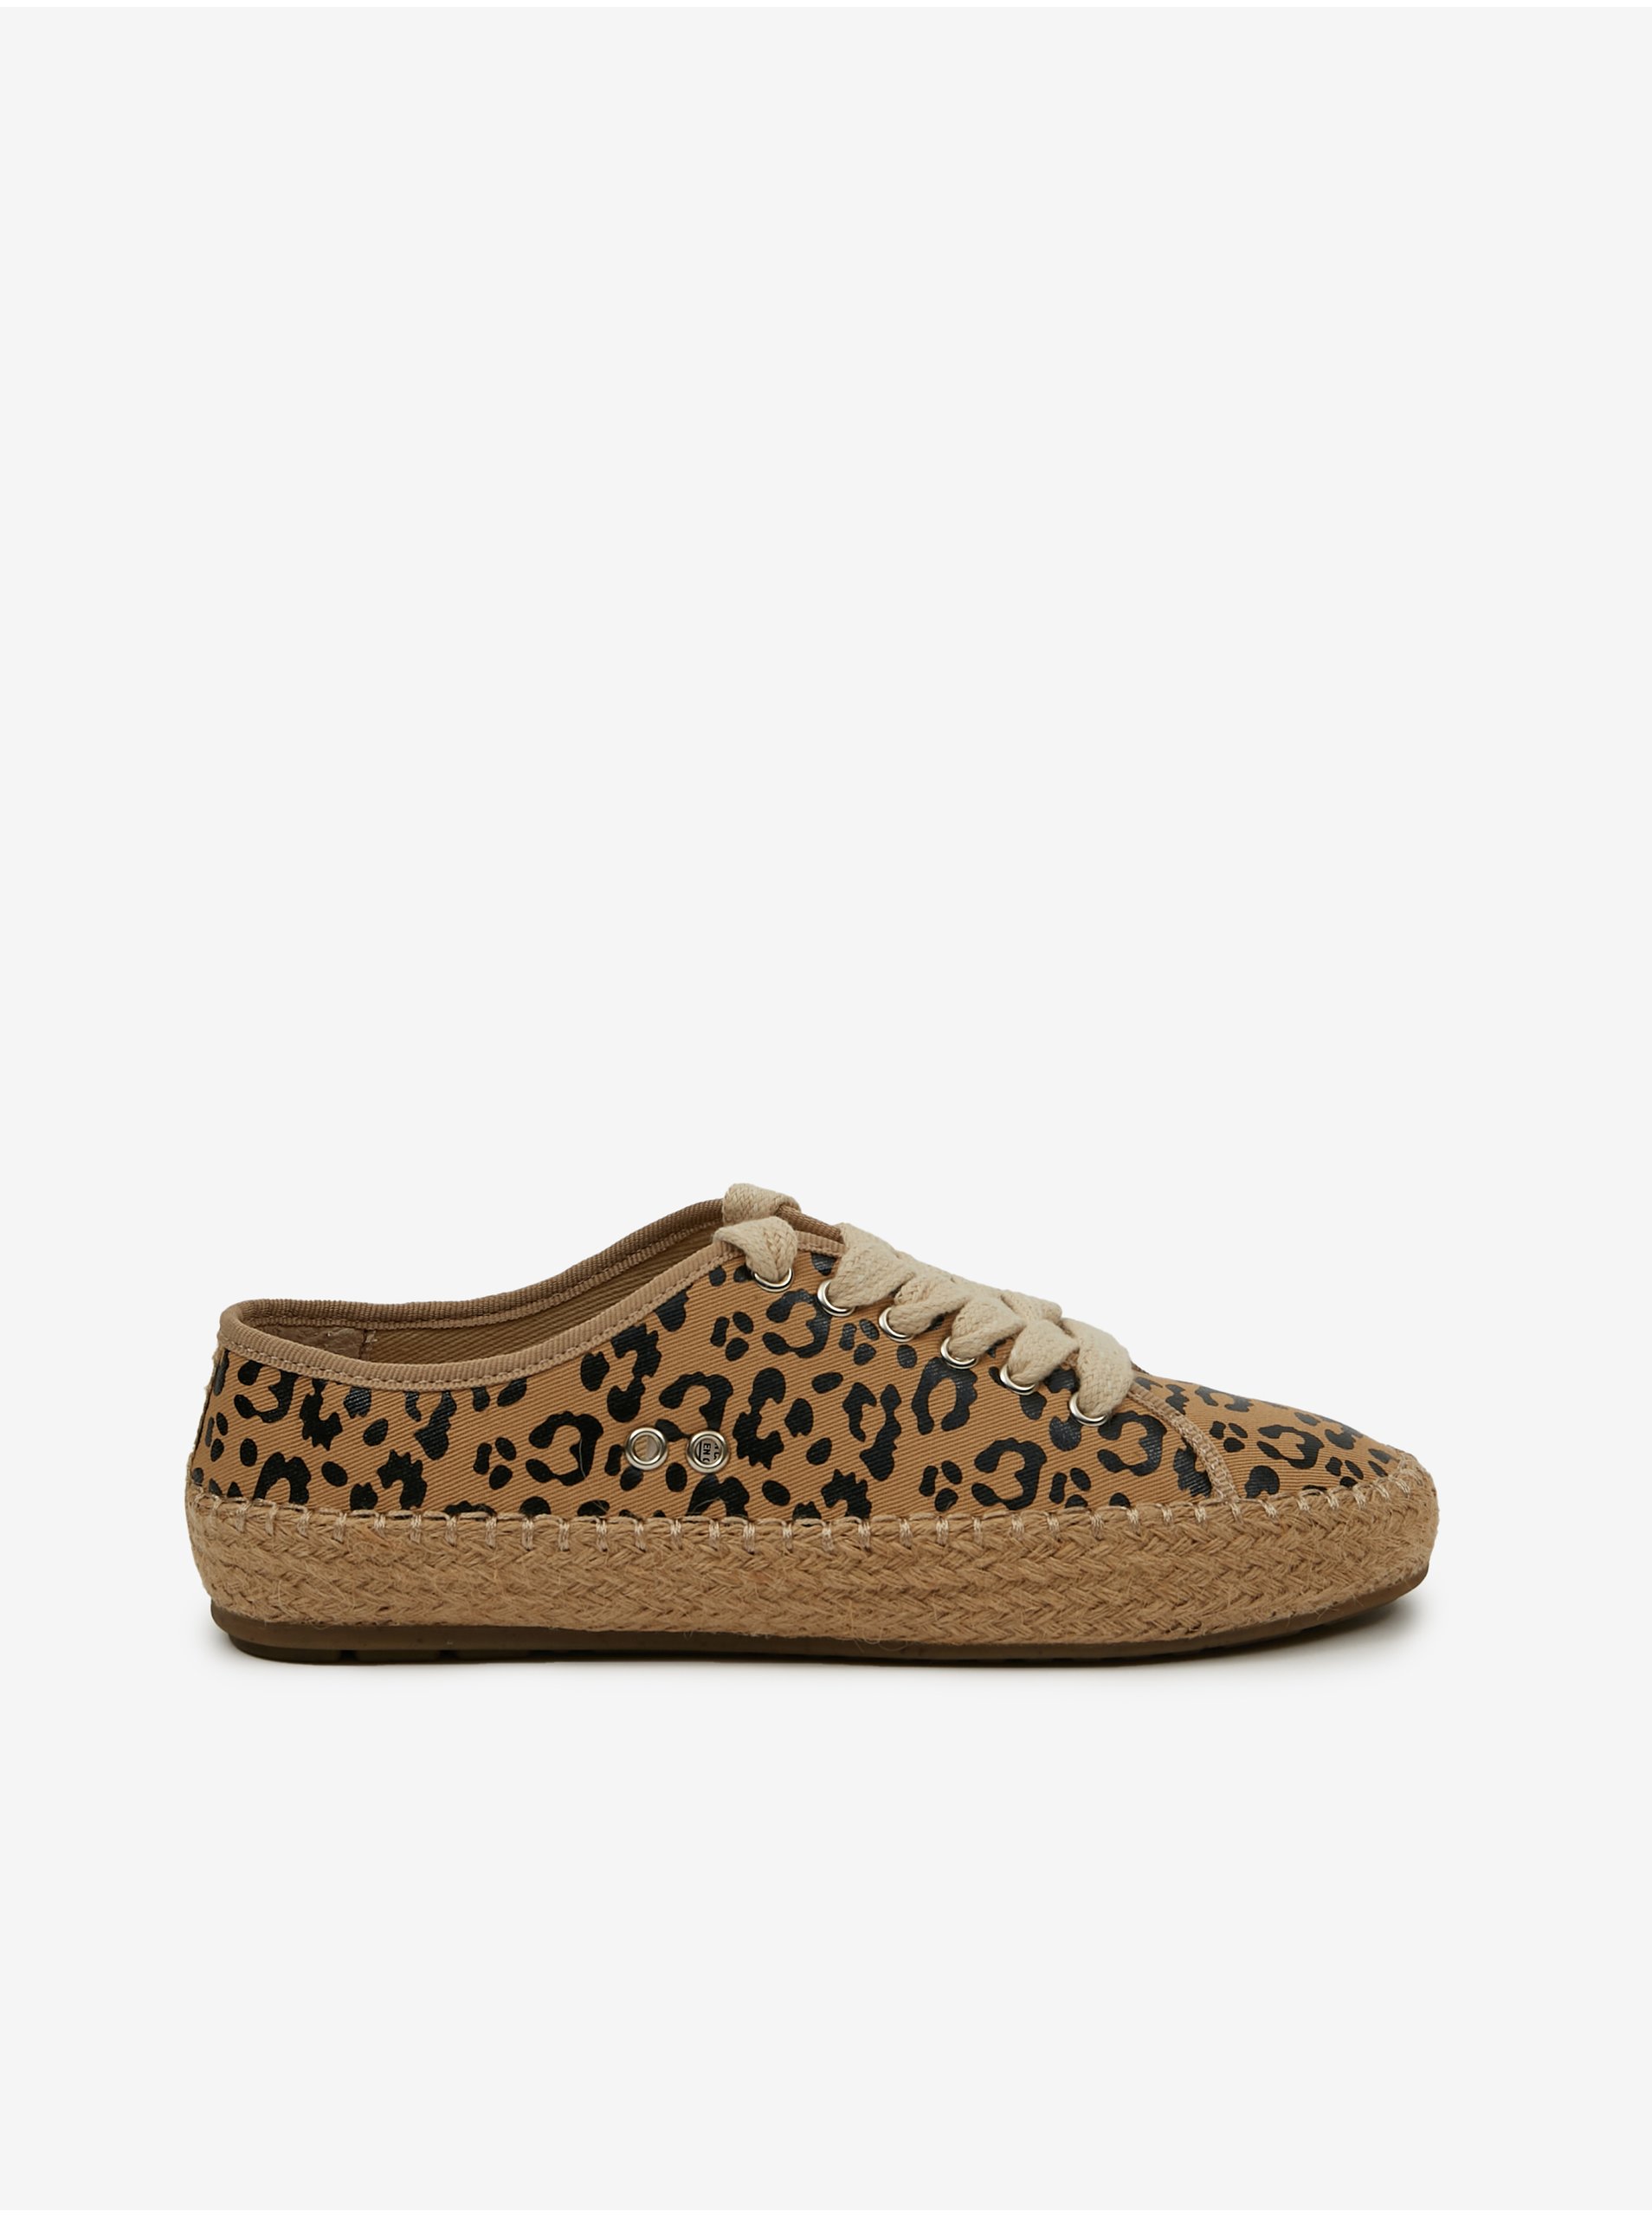 E-shop Béžové dámské vzorované tenisky Emu Australia Cuban Sand Leopard